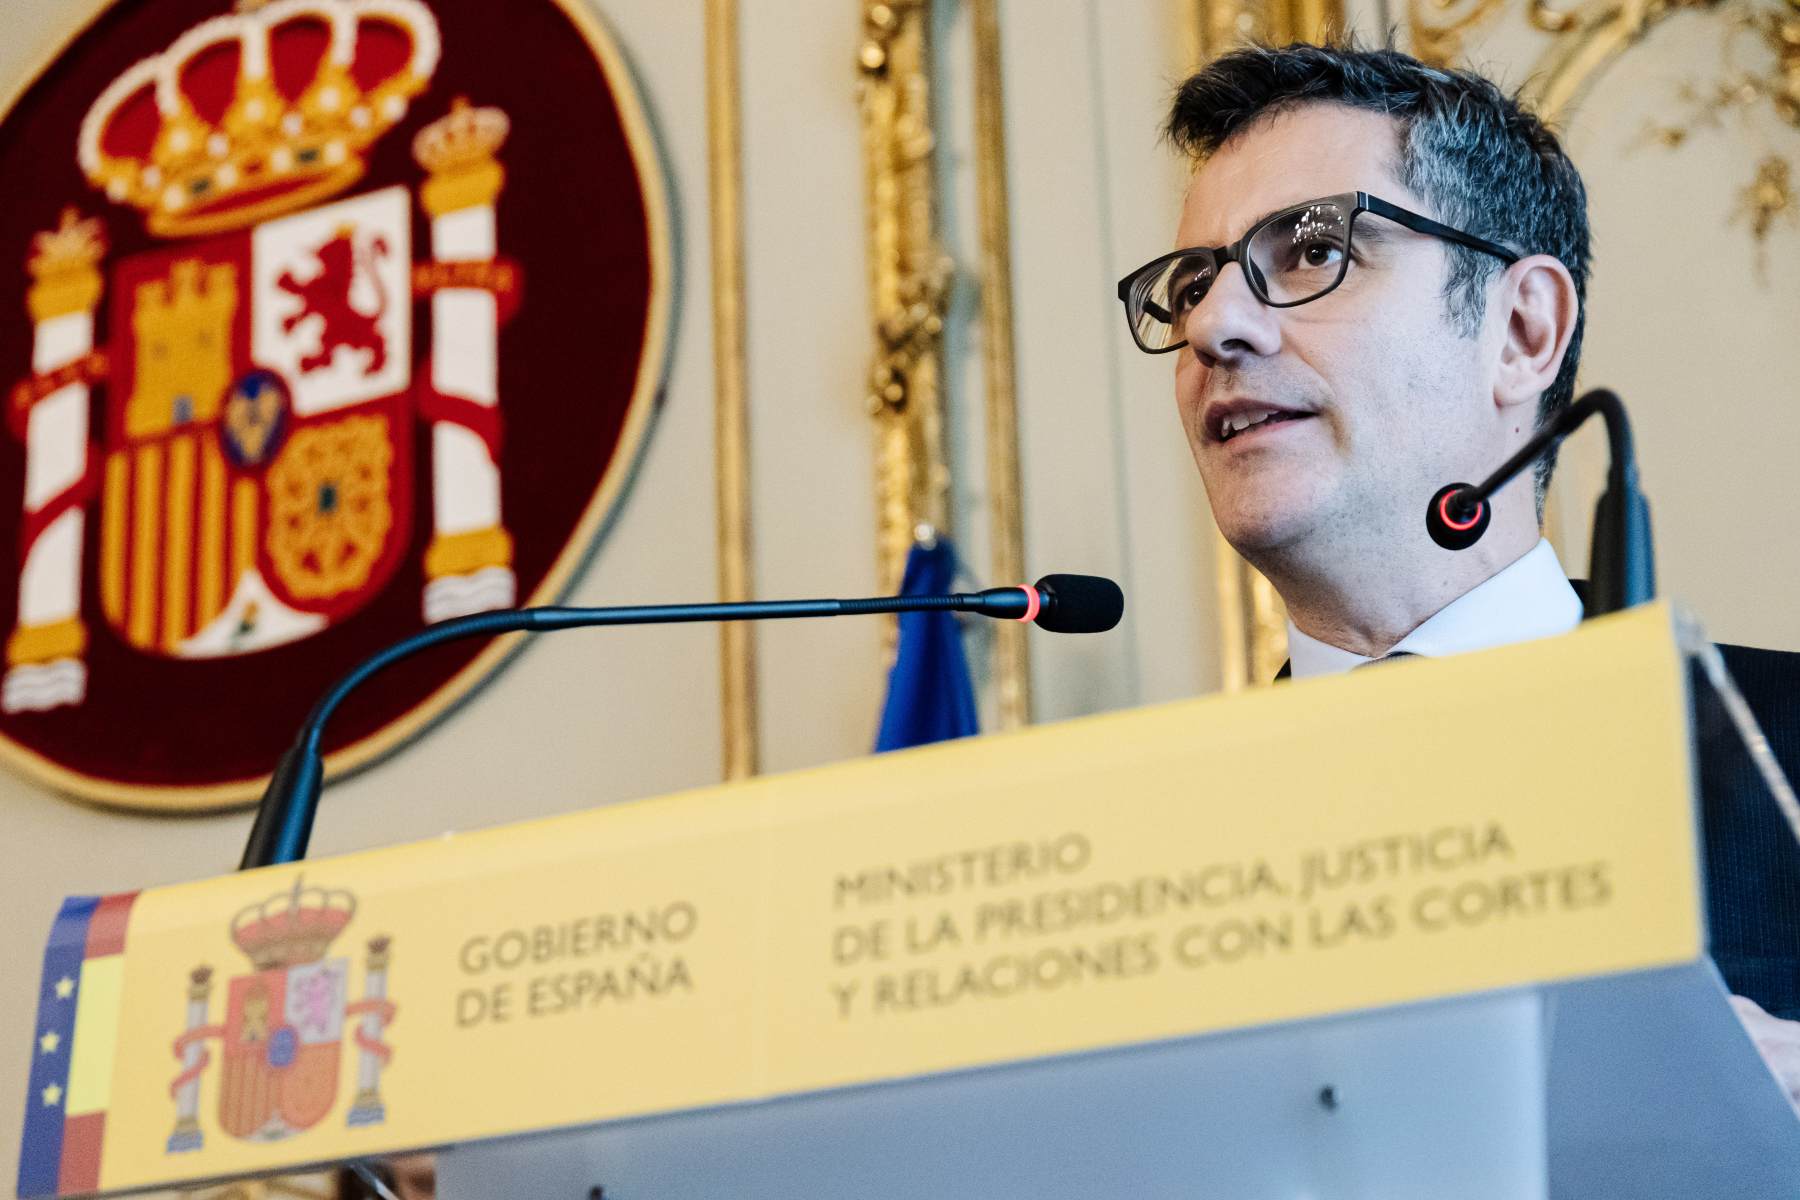 El ministro de Presidencia, Justicia y Relaciones con las Cortes, Félix Bolaños.